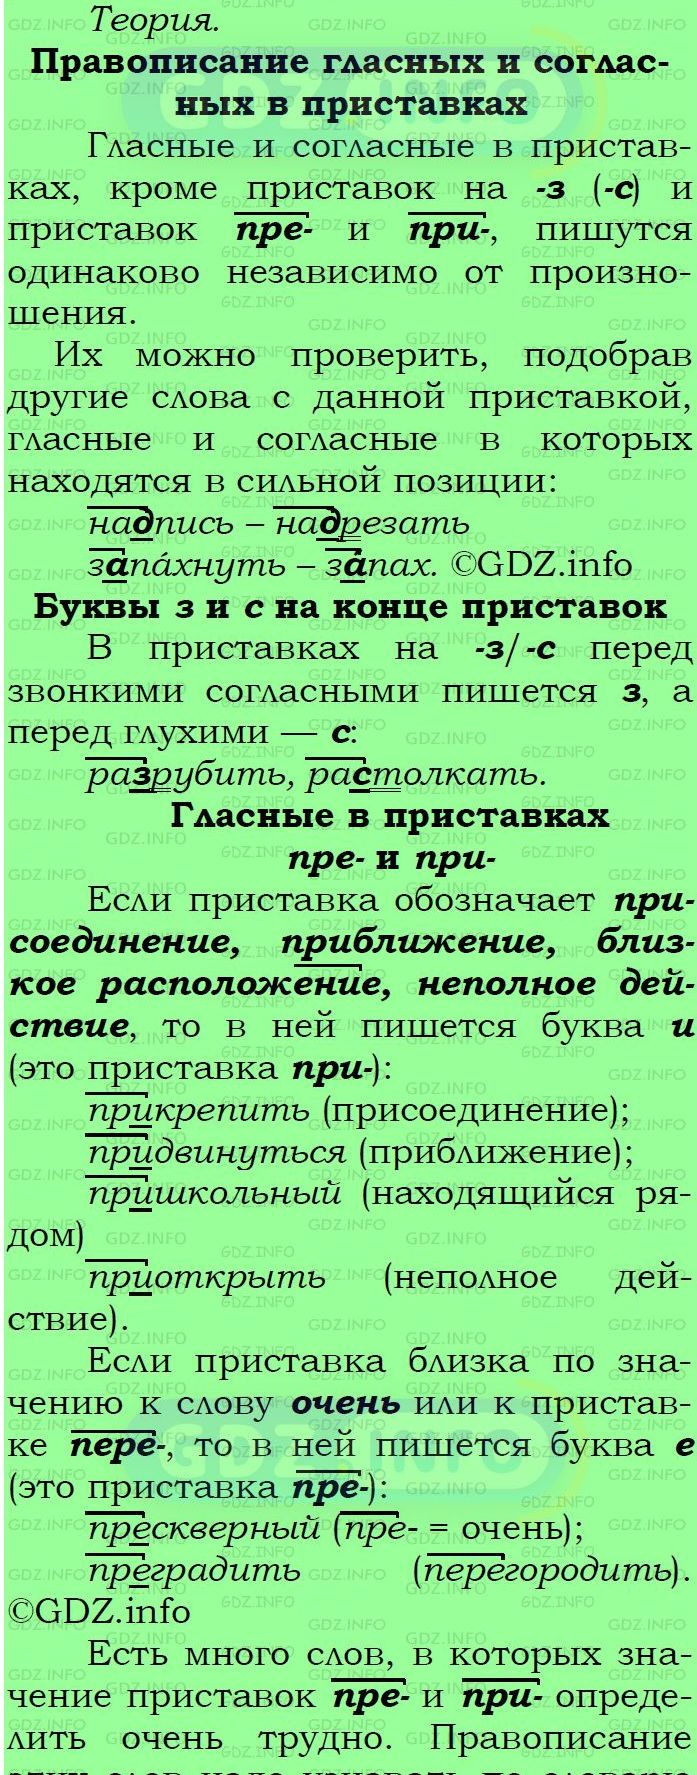 Фото подробного решения: Номер №236 из ГДЗ по Русскому языку 6 класс: Ладыженская Т.А.